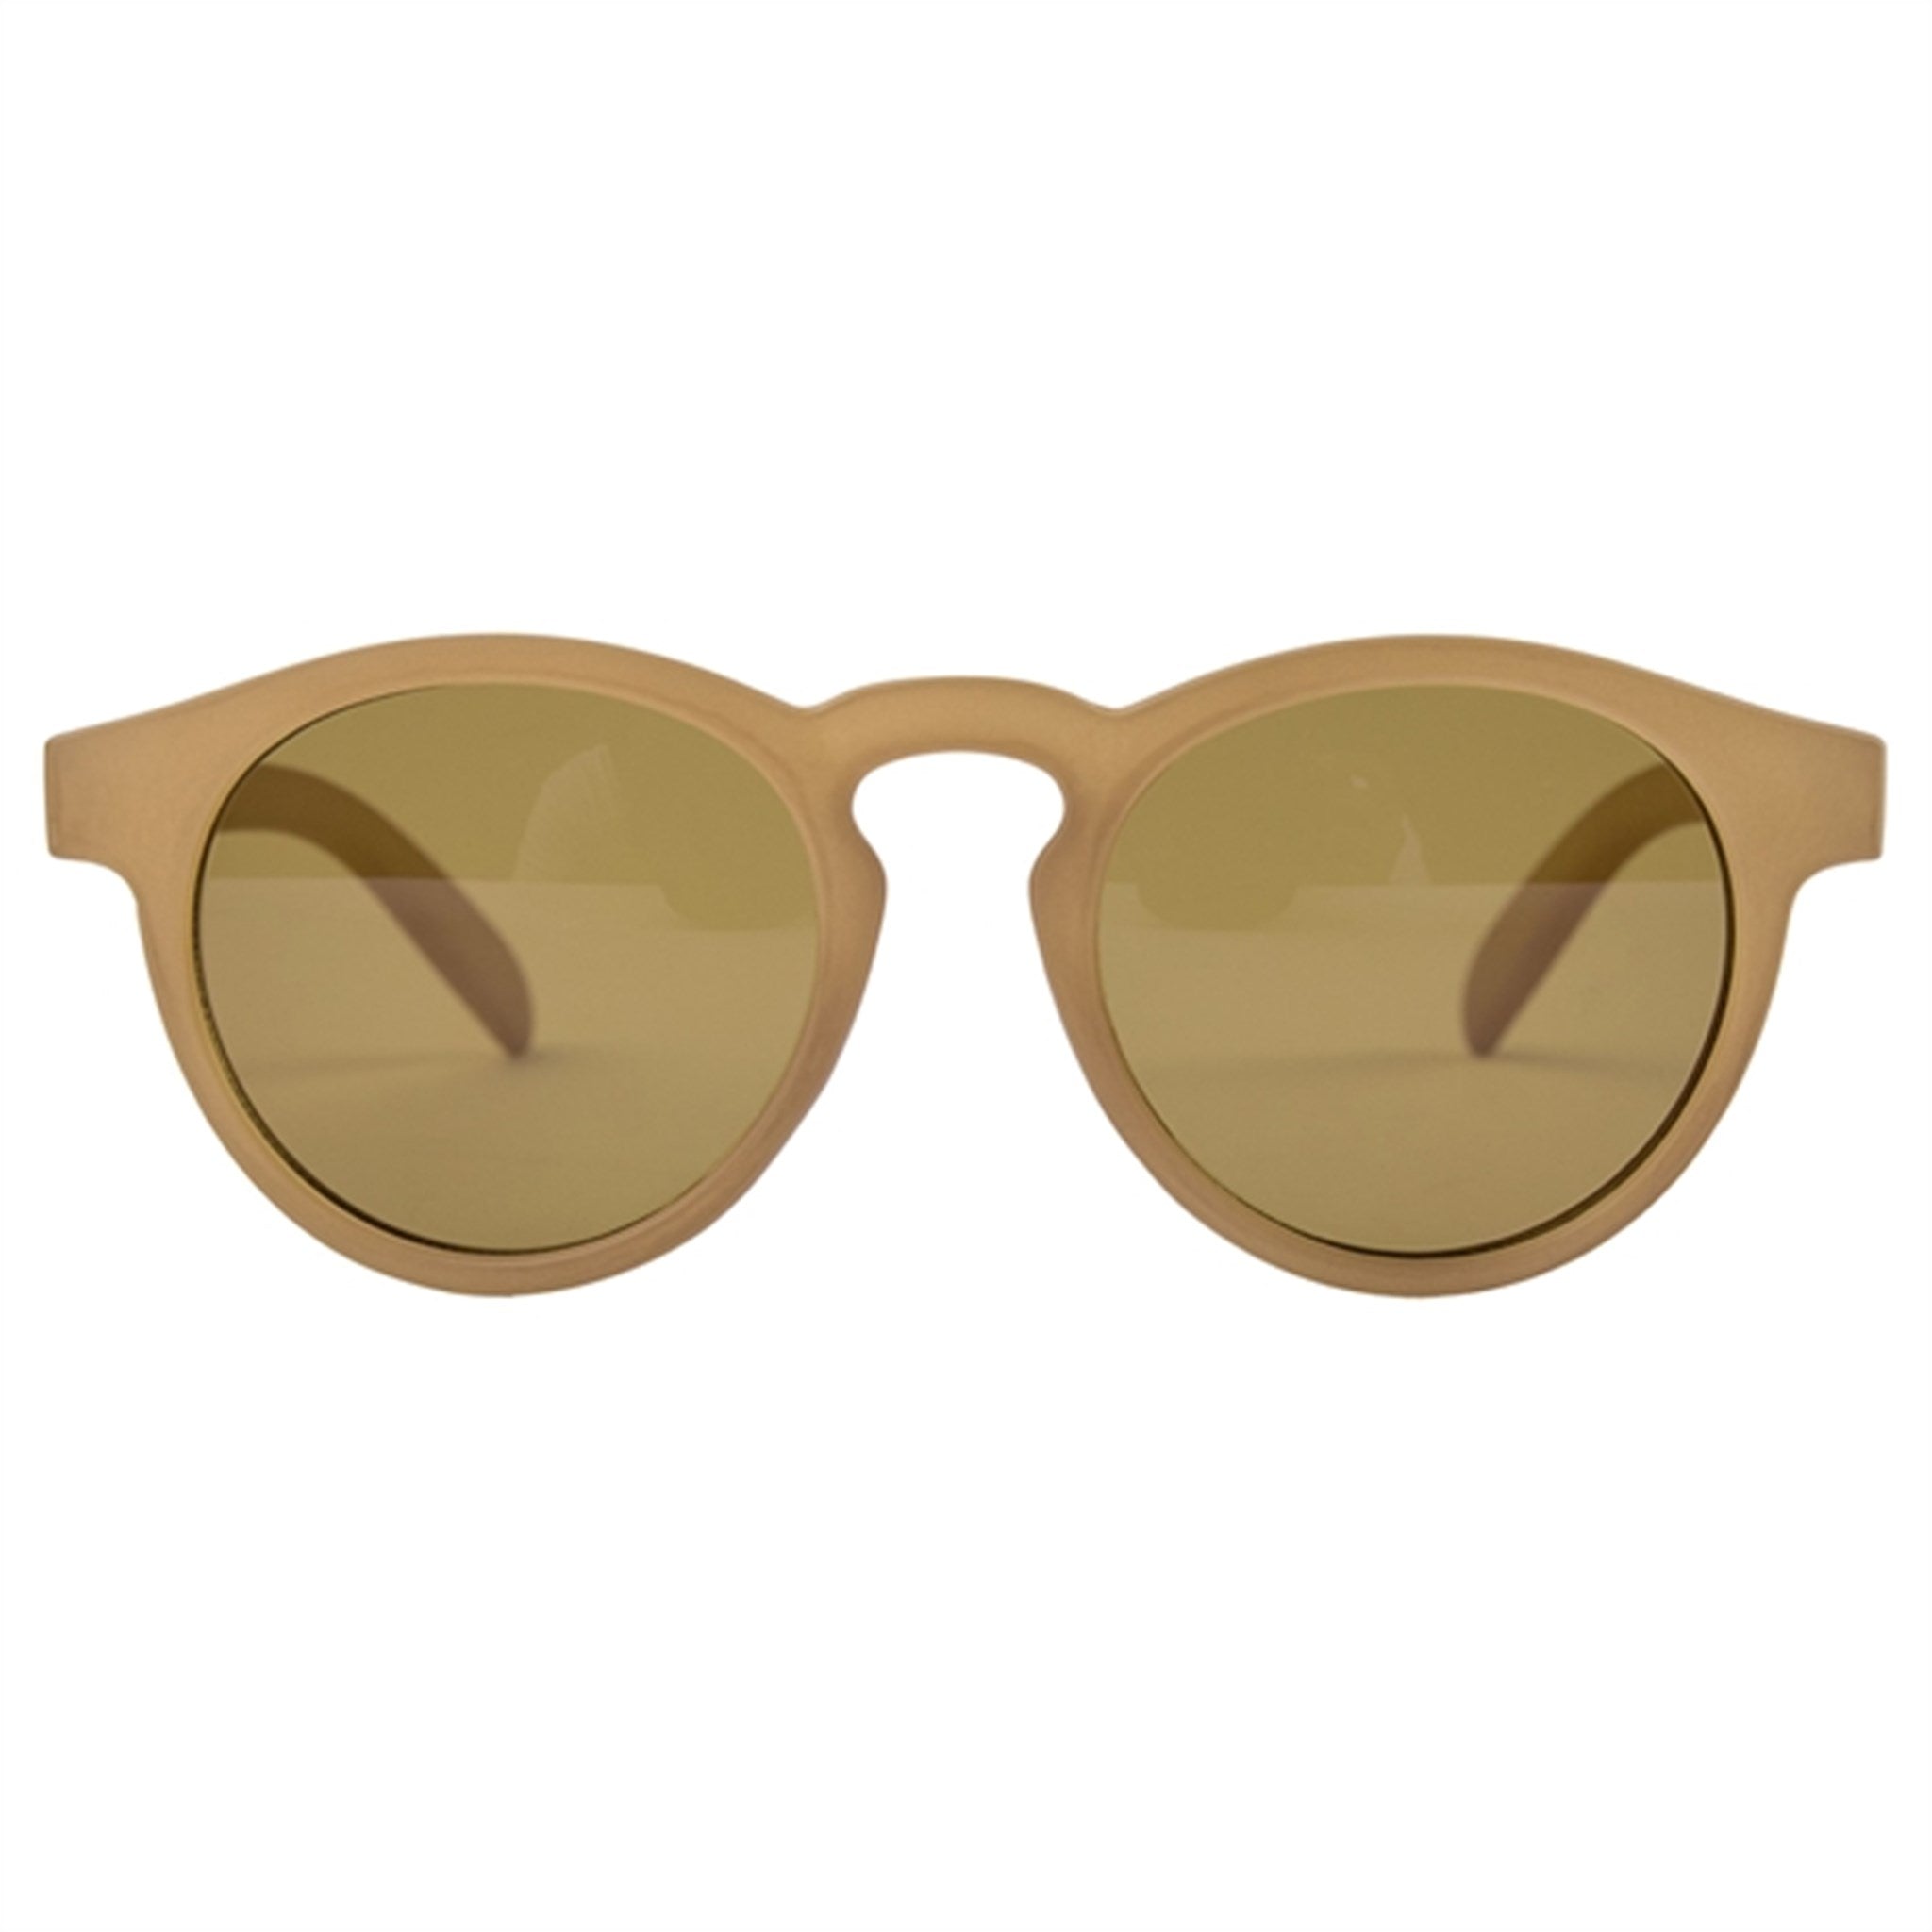 Sofie Schnoor Sunglasses Light Brown 2